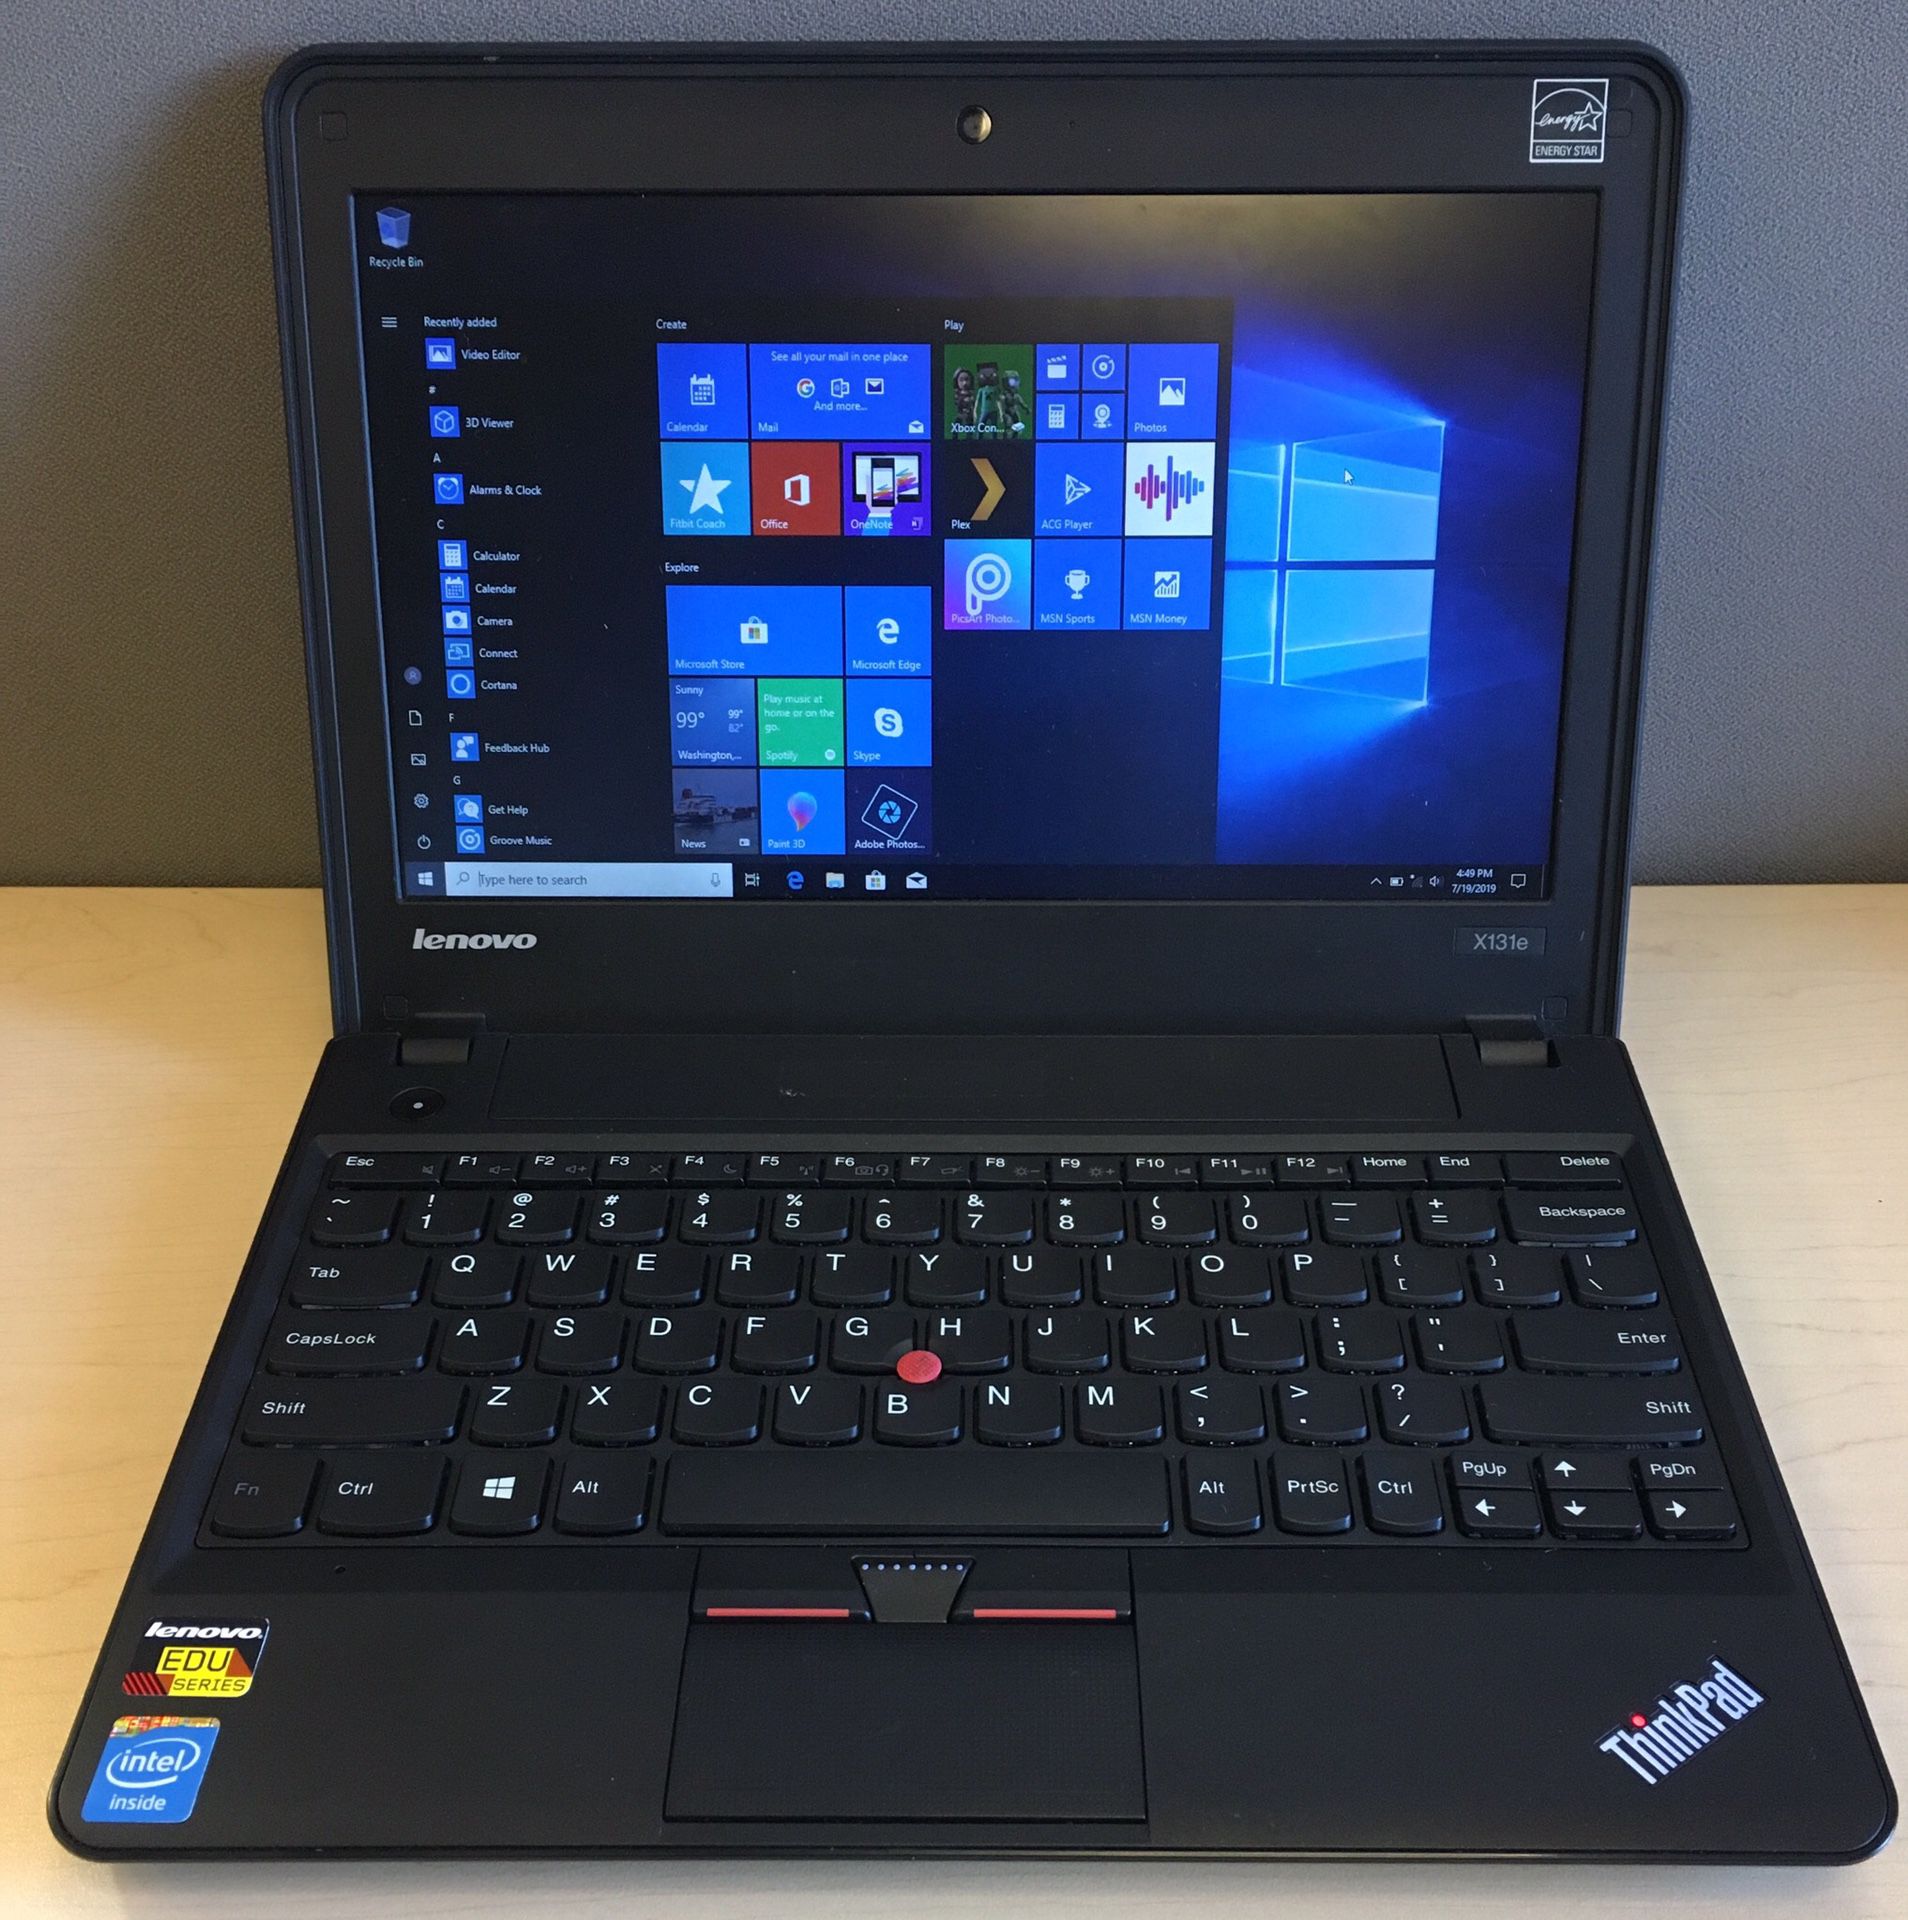 Lenovo Thinkpad x131e Small Laptop PC